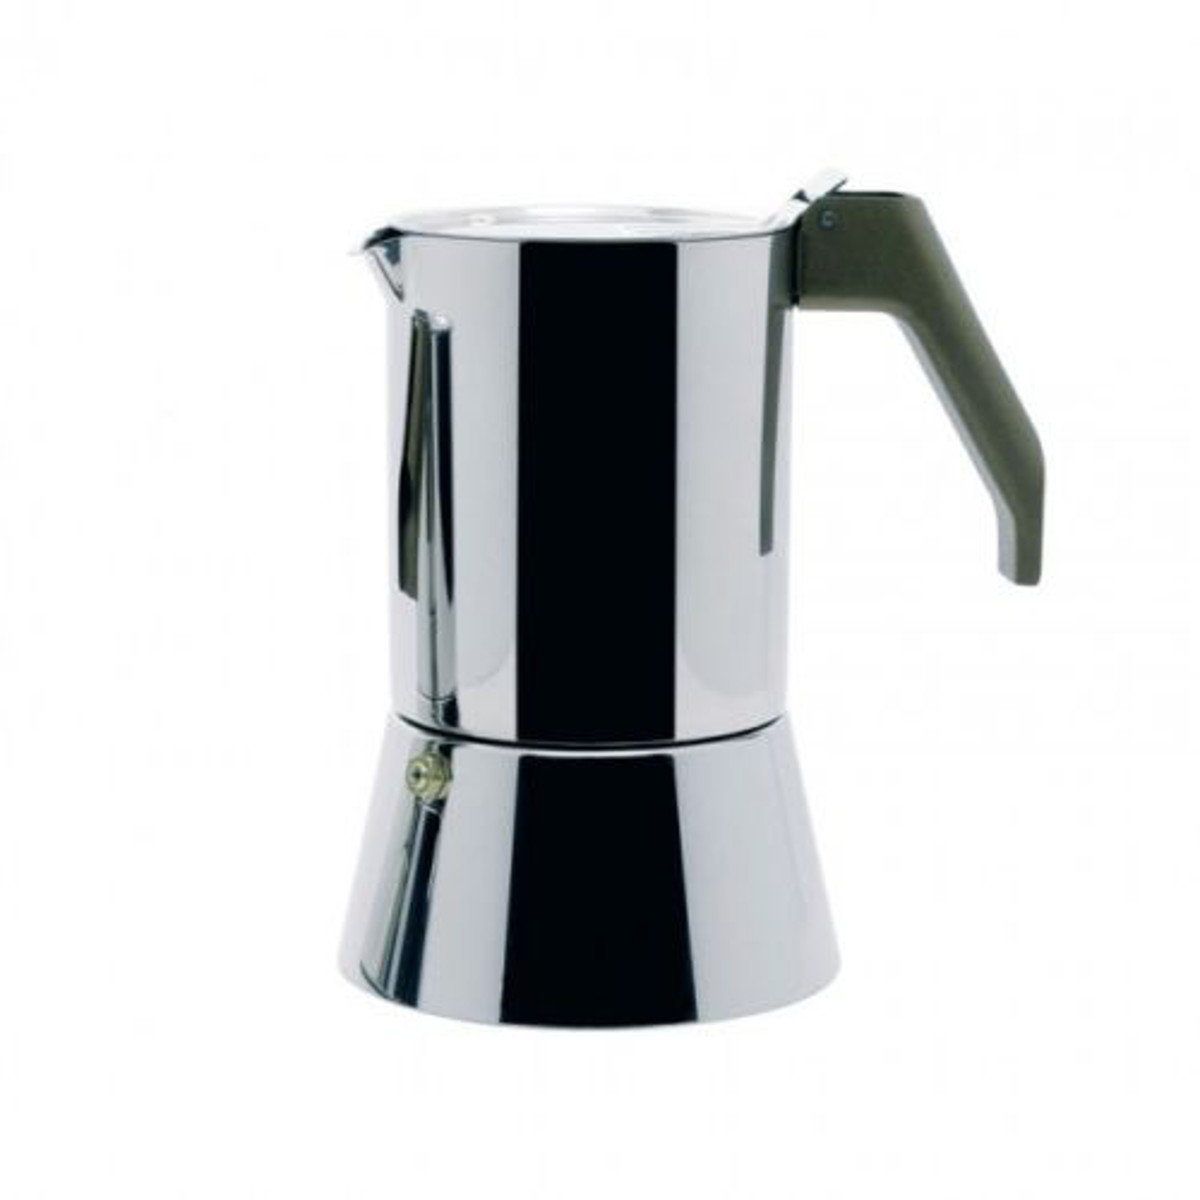 Alessi - Coffee maker 3 cups Sapper ARS09